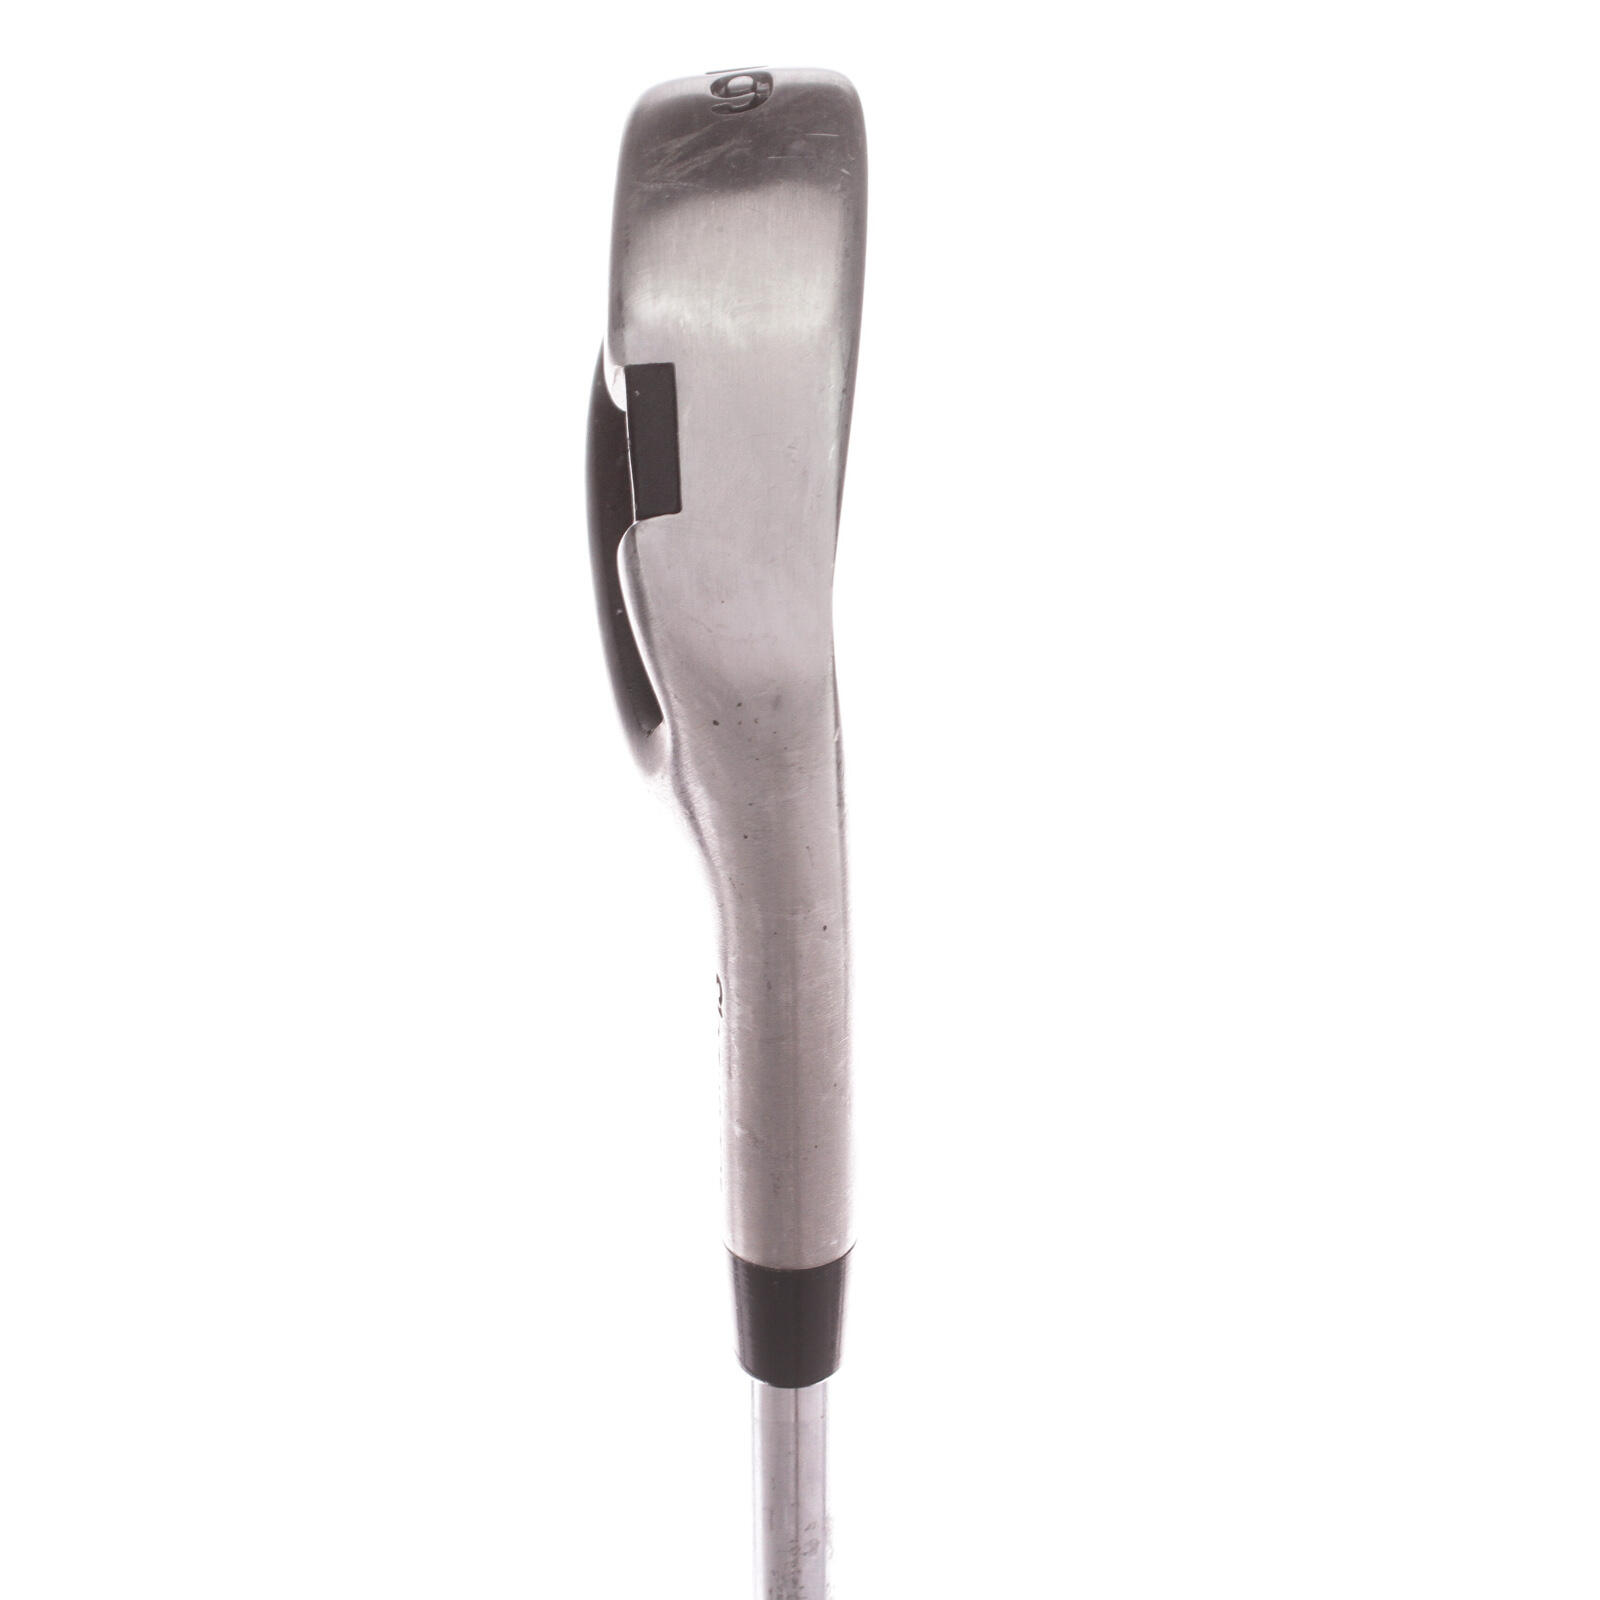 USED - 6-Iron Slazenger V300 Graphite Shaft Regular Flex Right Handed - GRADE B 3/5